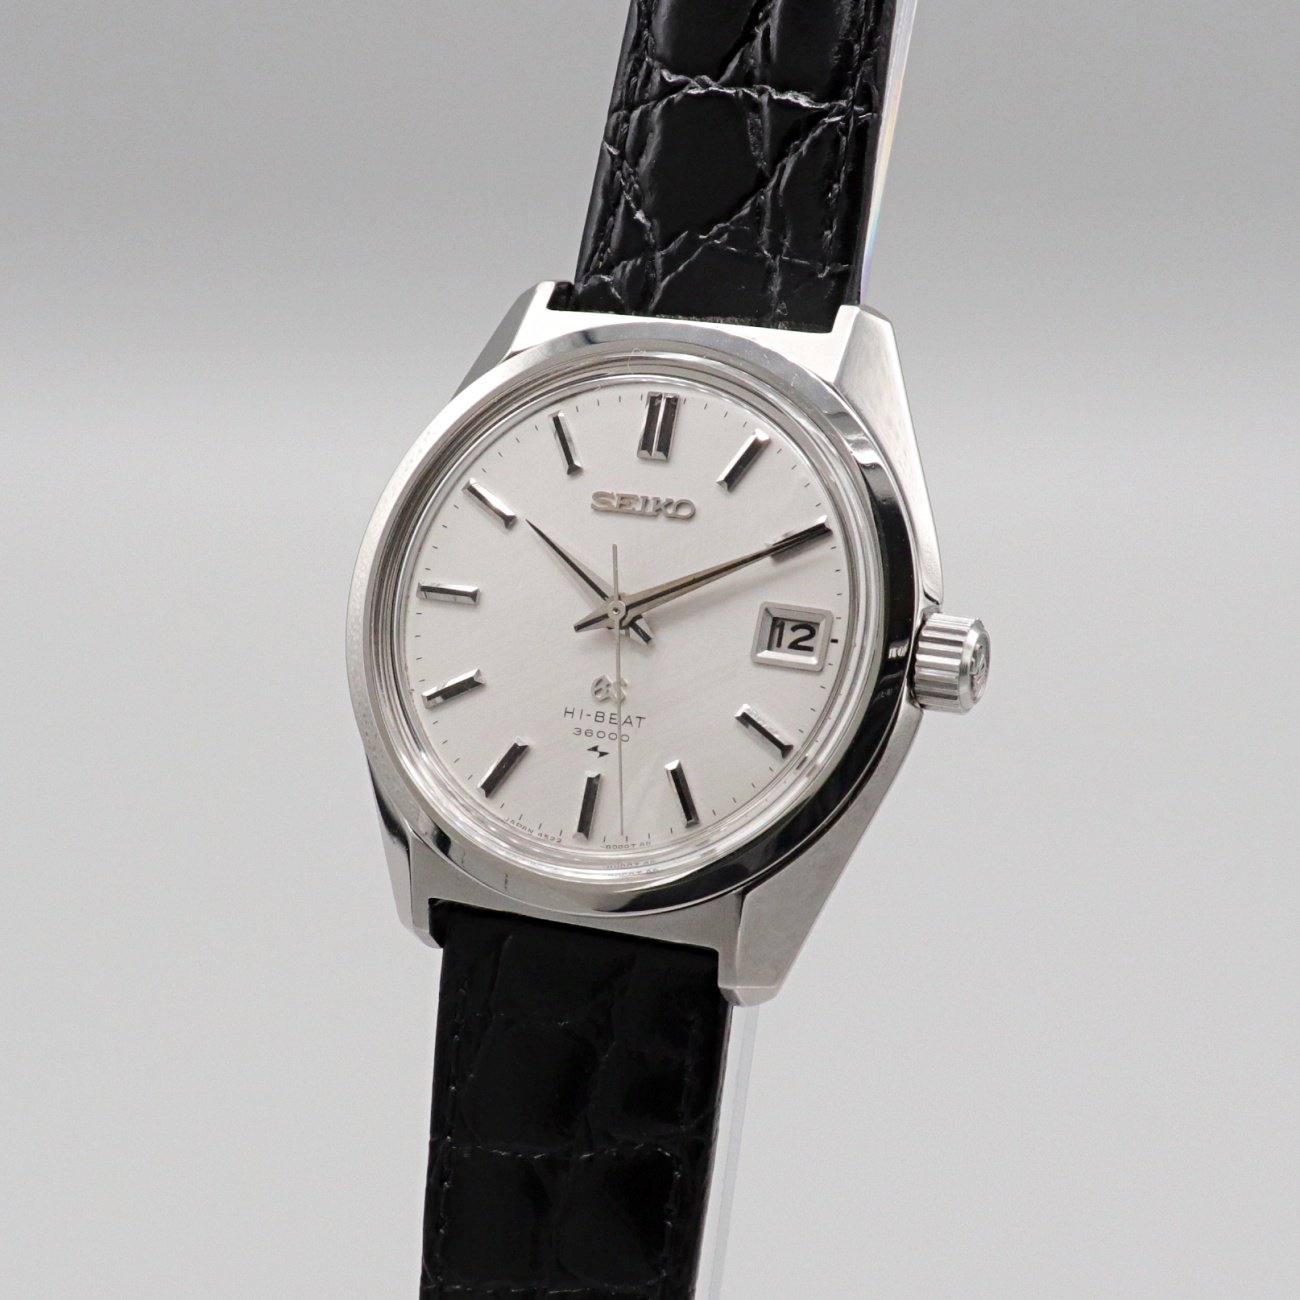 GRAND SEIKO グランドセイコー 4522-8000 手巻きハイビート - 腕時計 